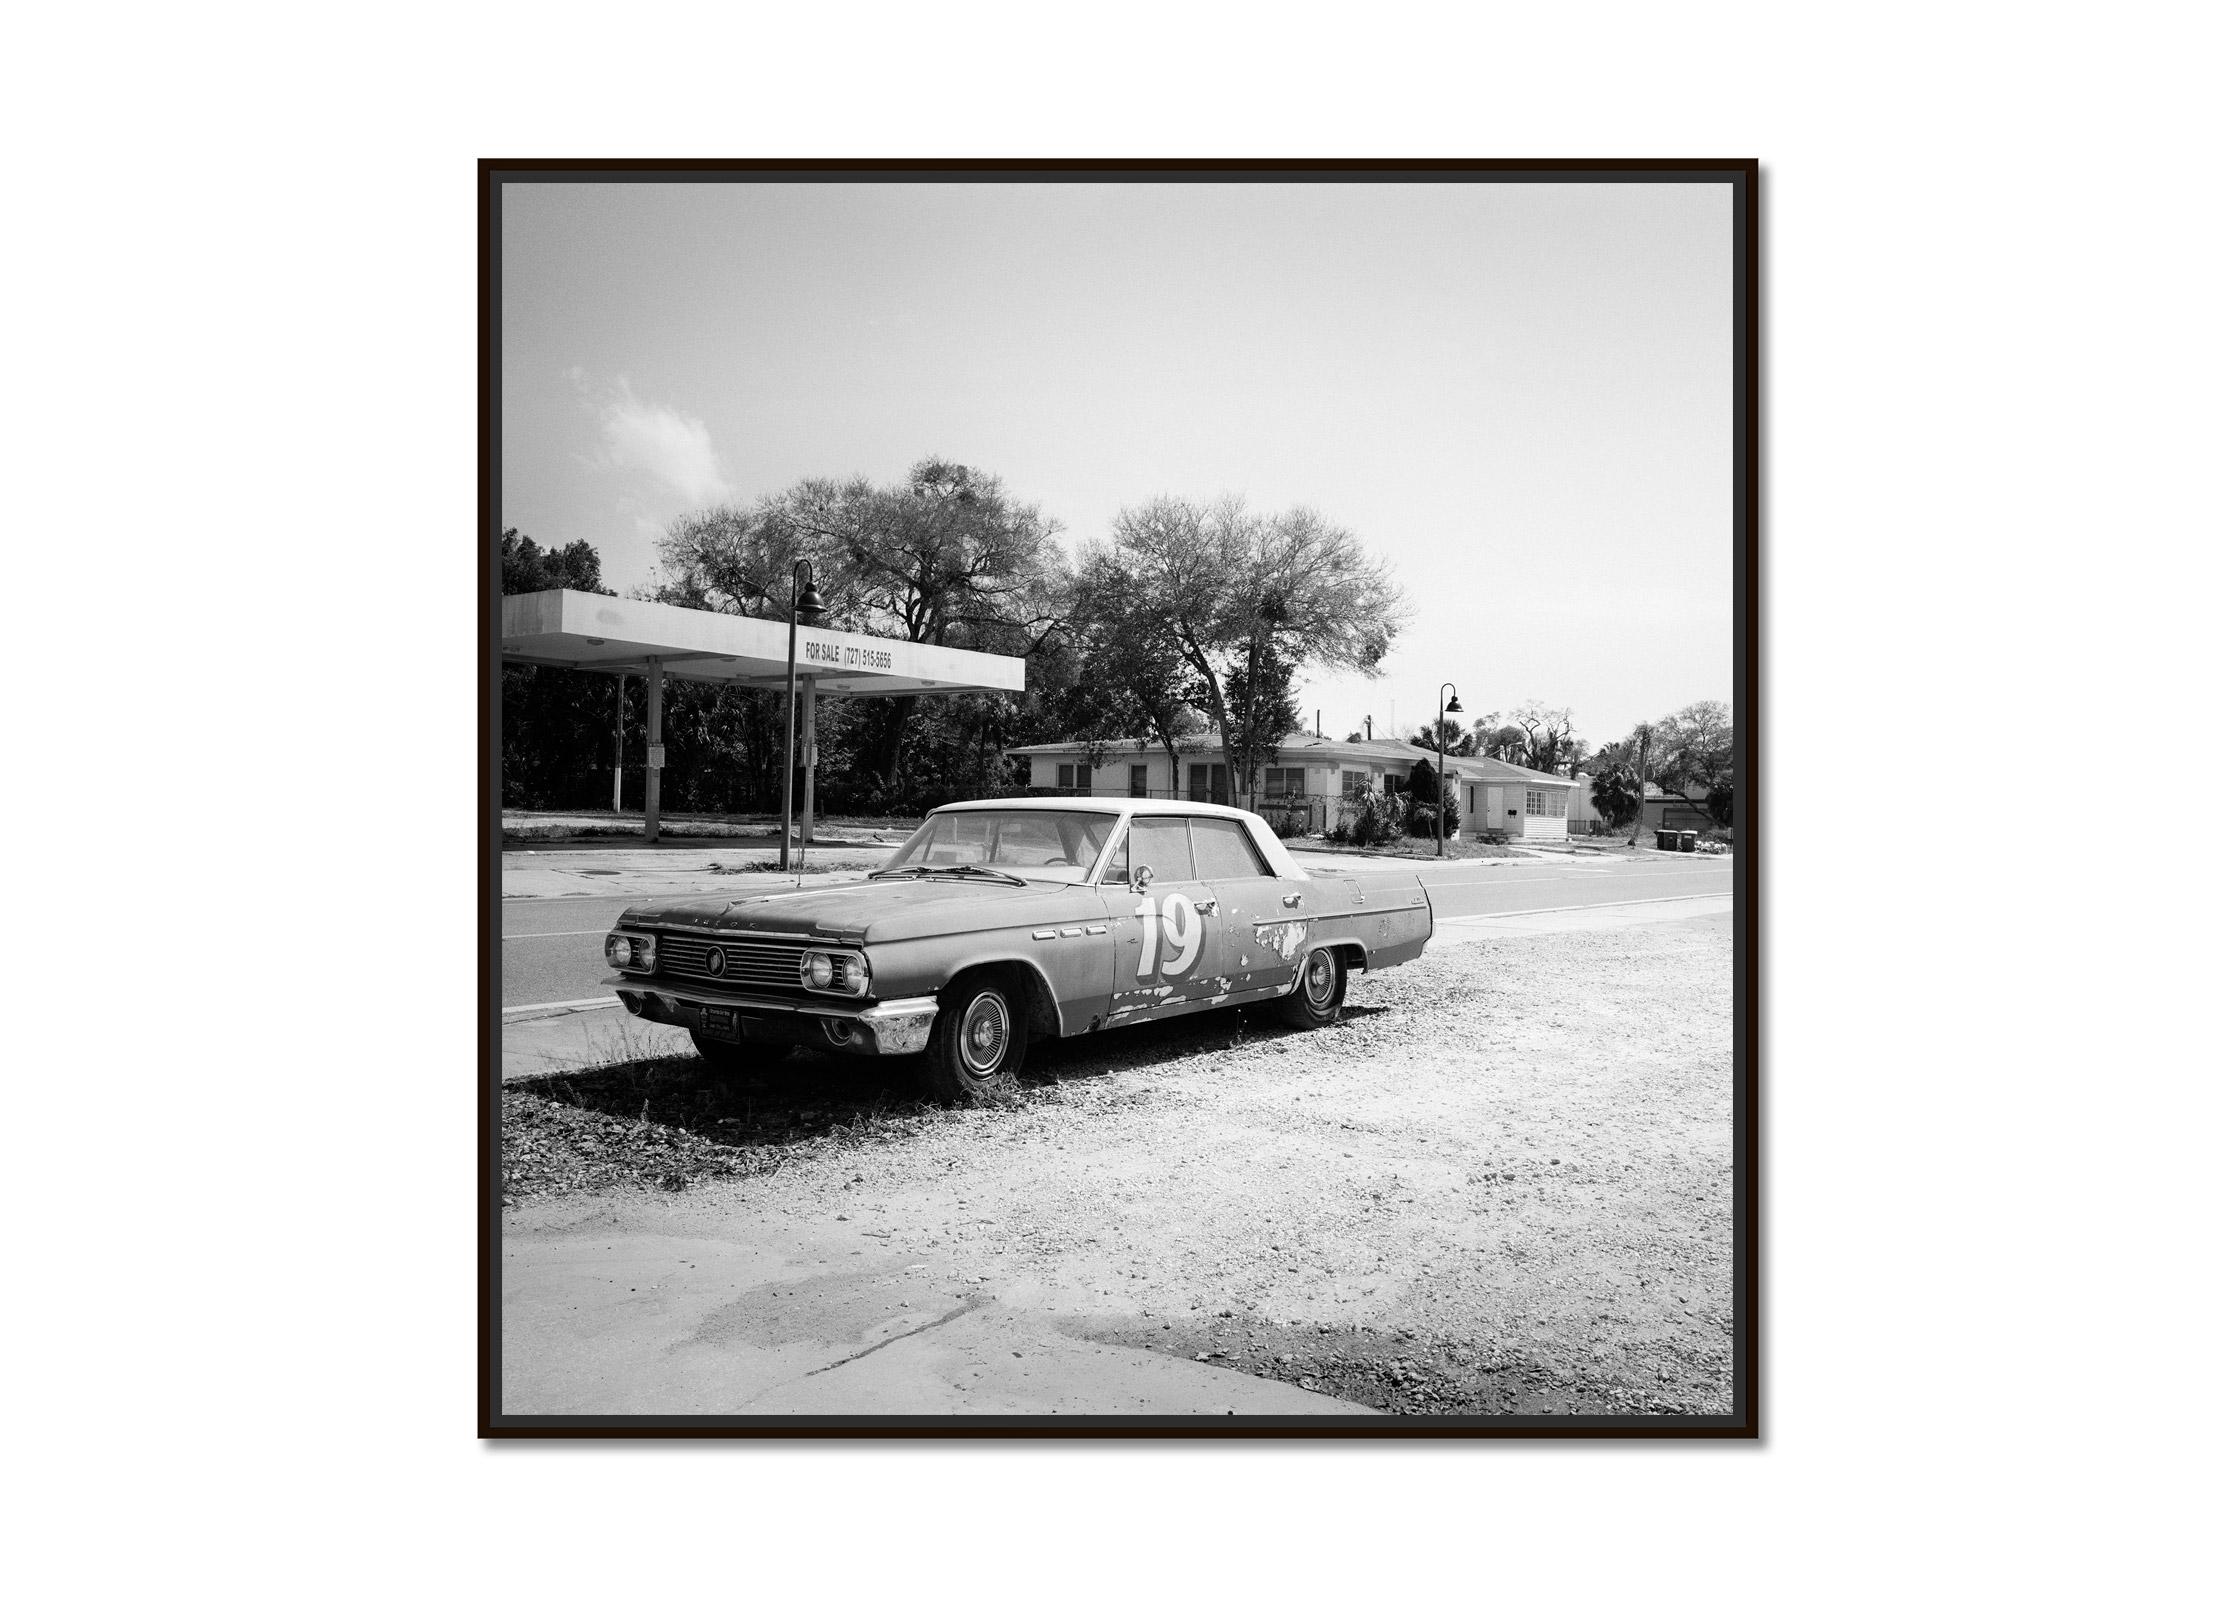 Buick zum Verkauf, Oldtimer, Florida, USA, Schwarz-Weiß-Landschaftsfotografie – Photograph von Gerald Berghammer